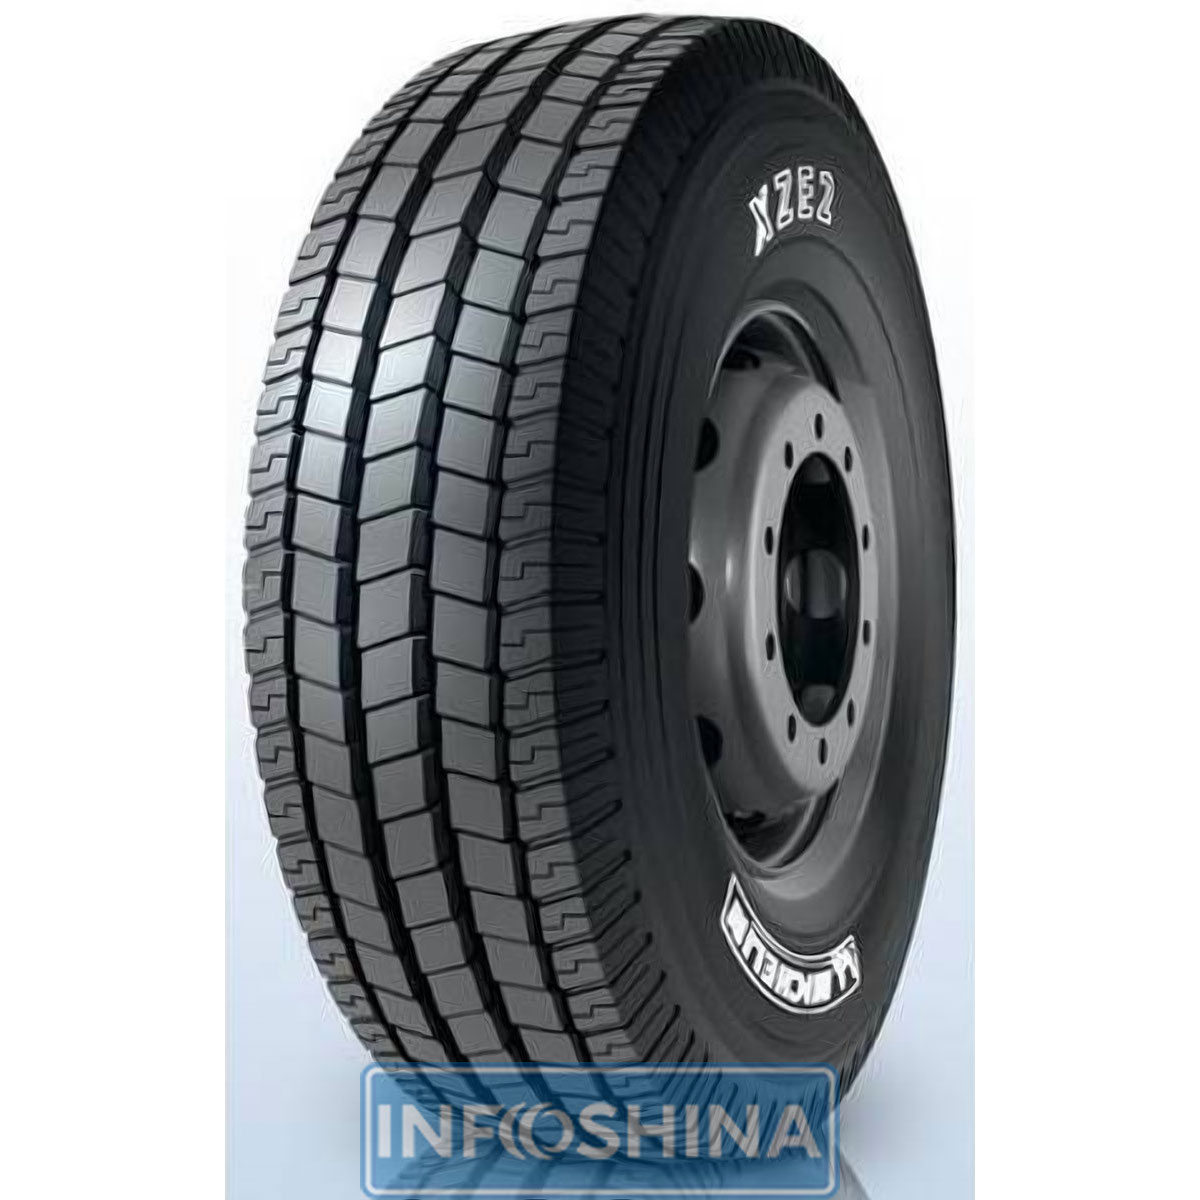 Купить шины Michelin XZE2 (универсальная) 275/80 R22.5 149/146L